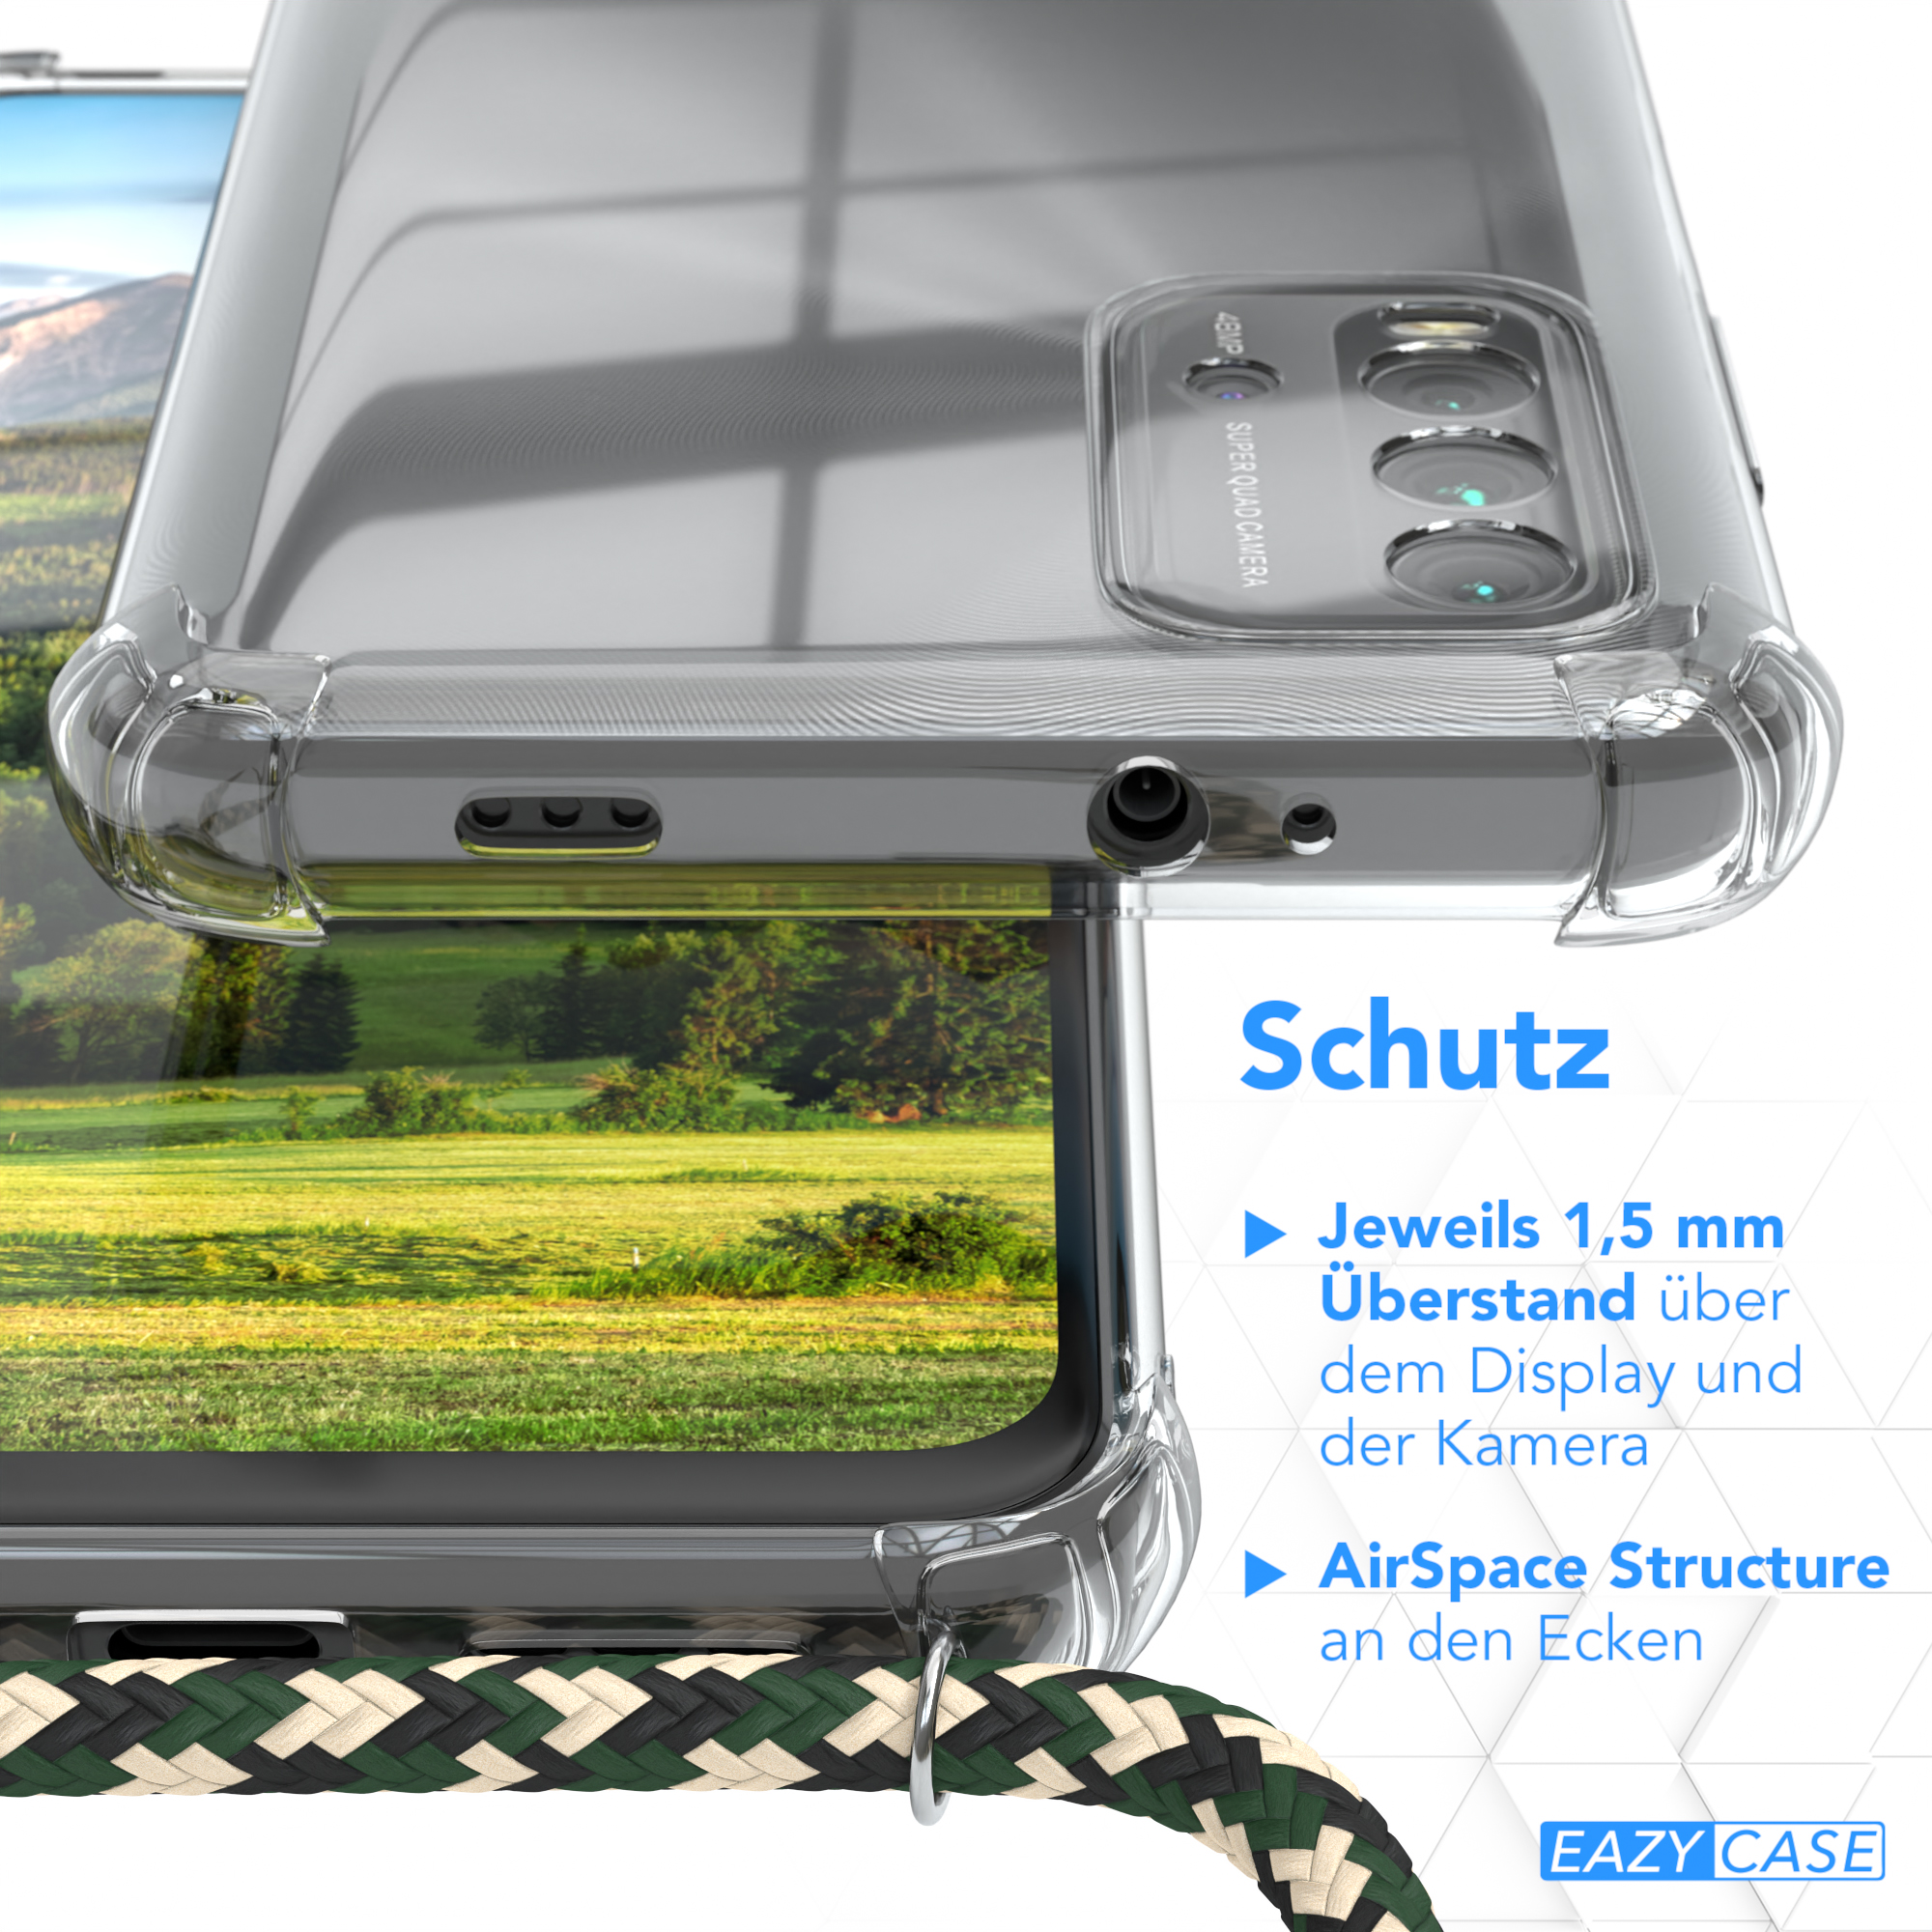 Umhängeband, Clear Redmi Grün Camouflage mit EAZY Xiaomi, 9T, Gold Clips / CASE Cover Umhängetasche,